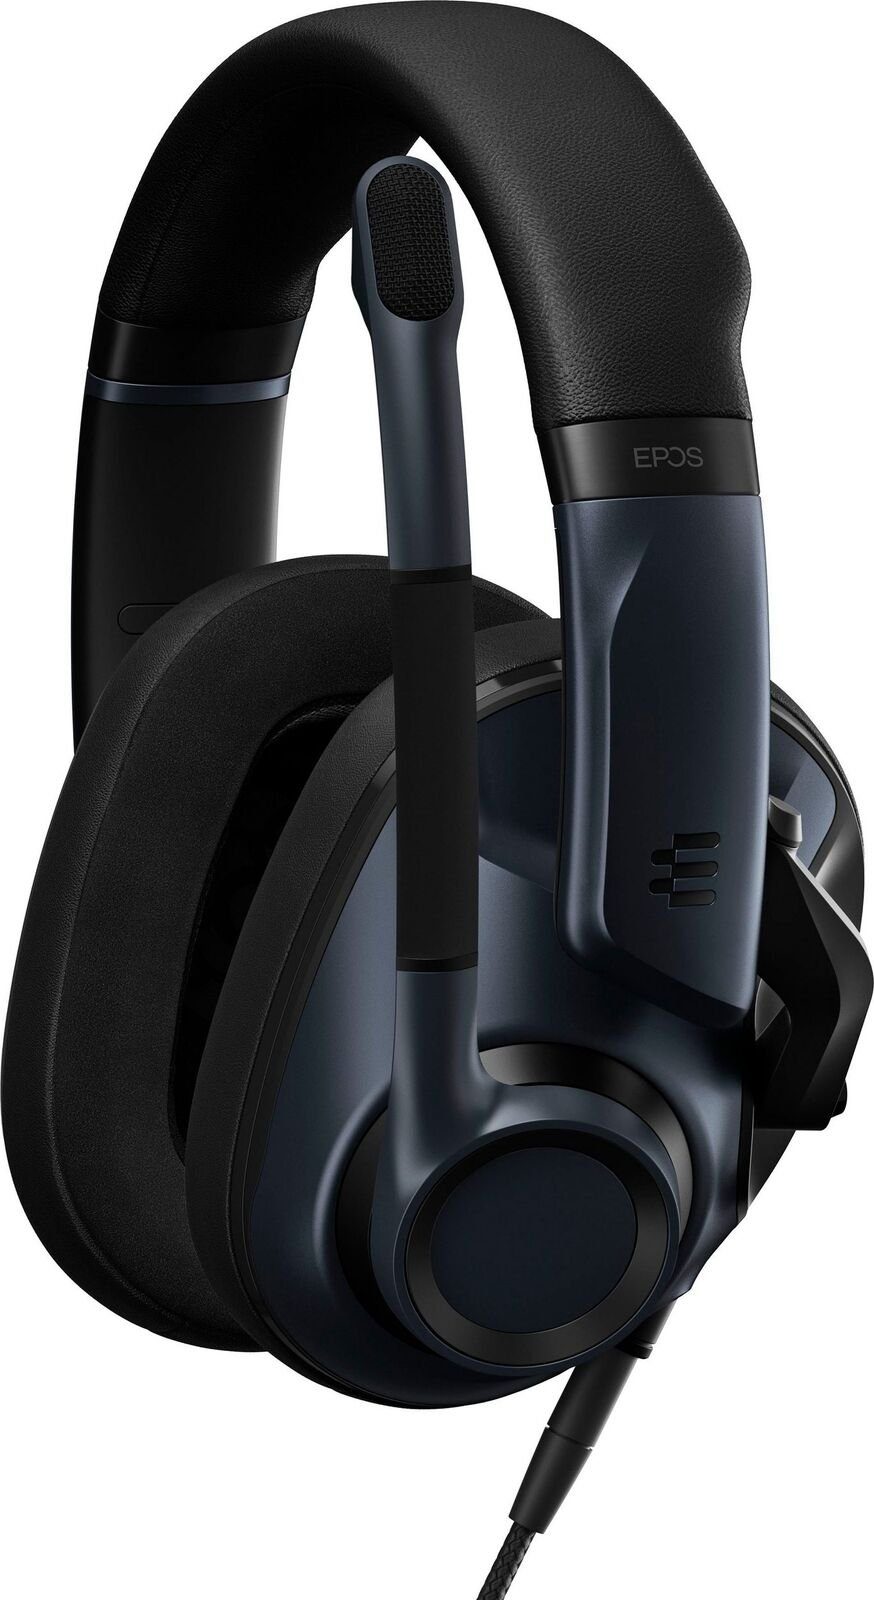 hat Pro Kopfhörer H6 Gaming-Headset, mit Mikrofon schlankere Acoustic EPOS ein Bügelarm Diese EPOS Closed